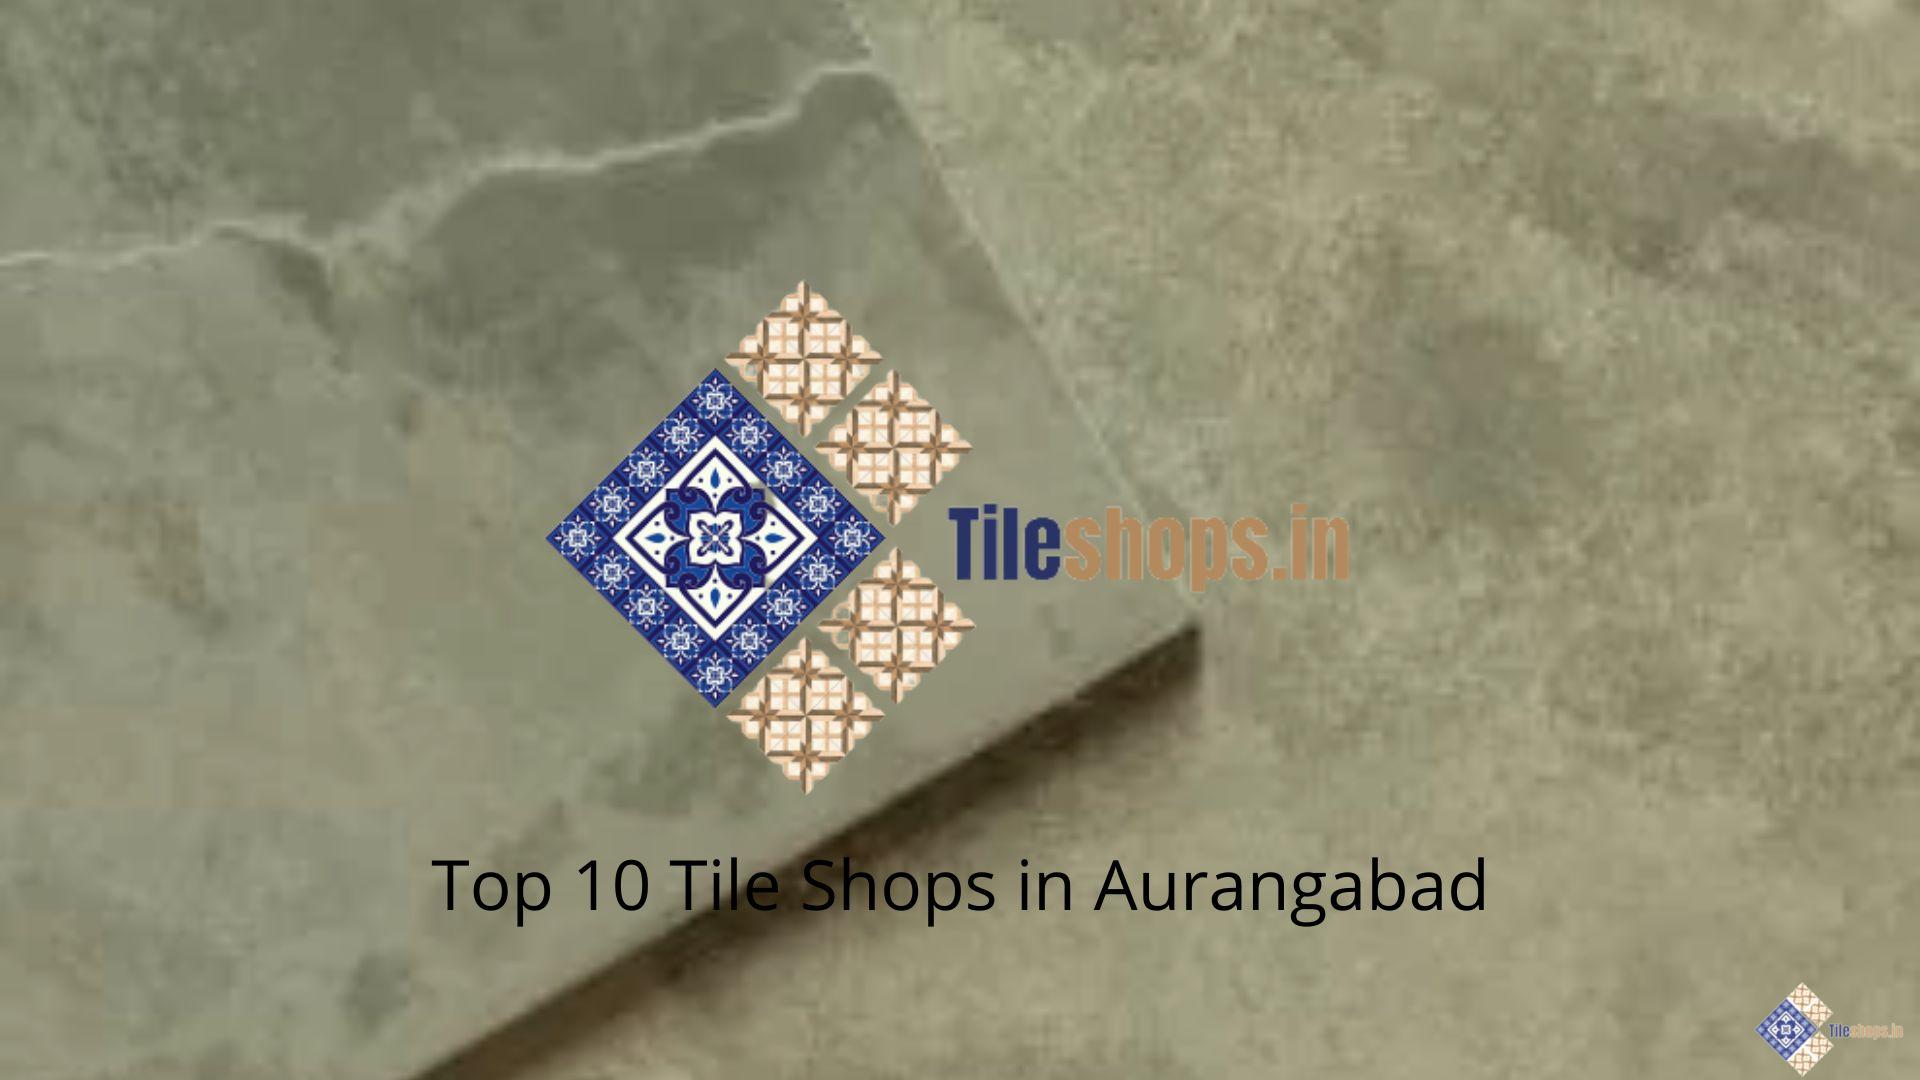 Top 10 Tile Shops in Aurangabad